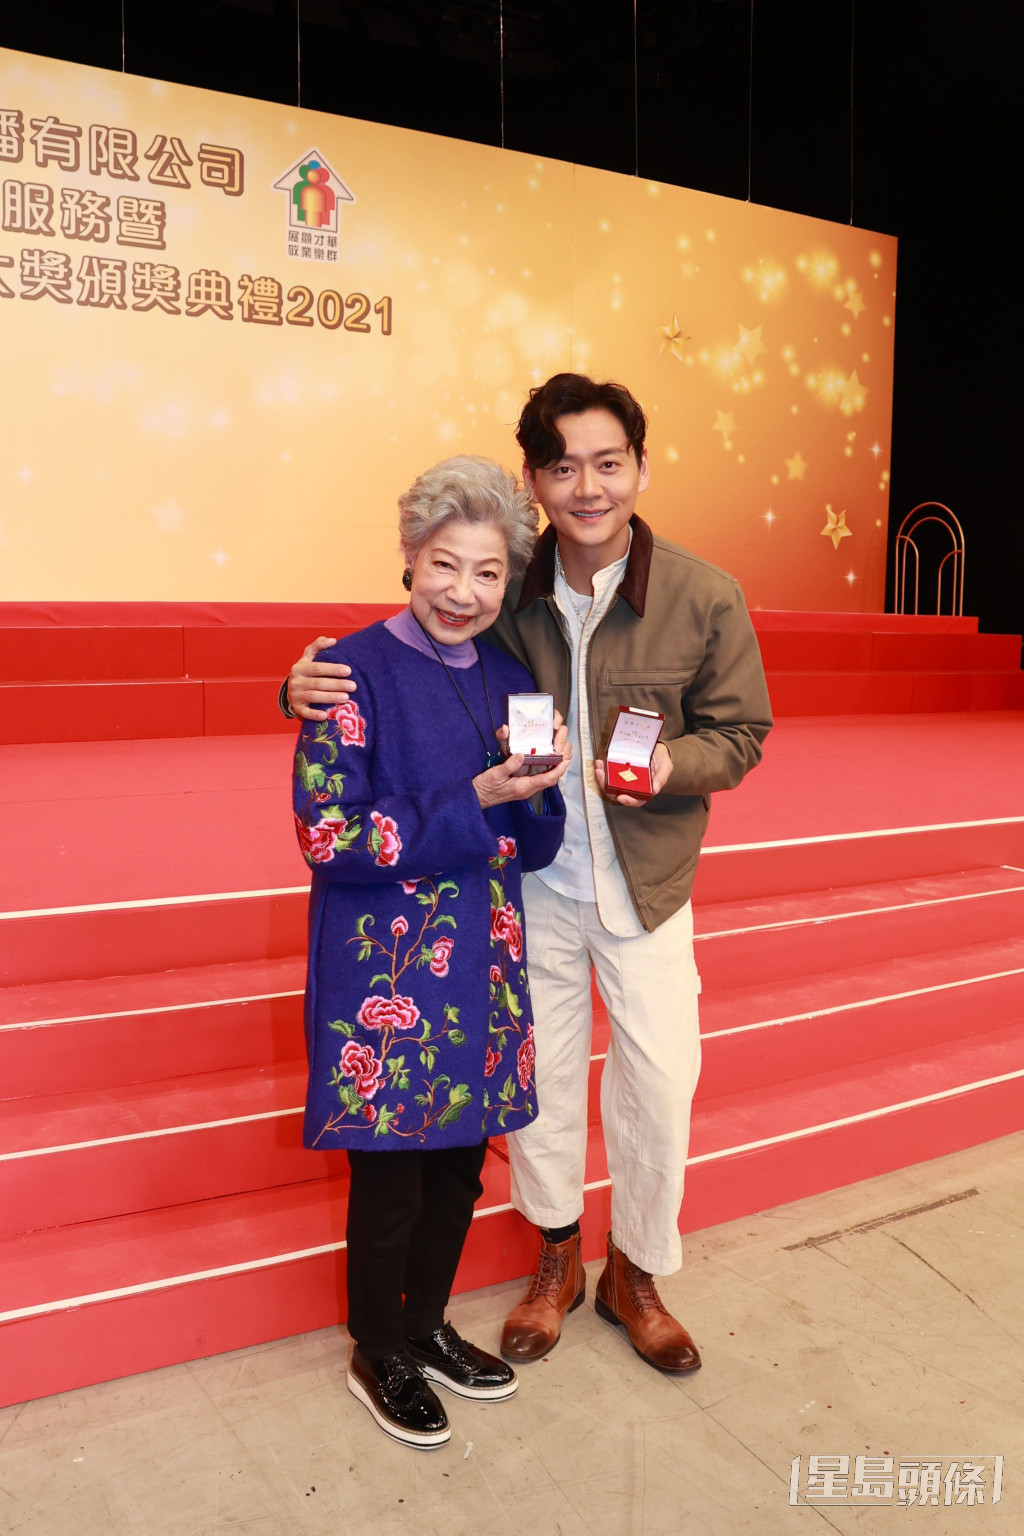 羅蘭早前與張振朗領取TVB長期服務獎。